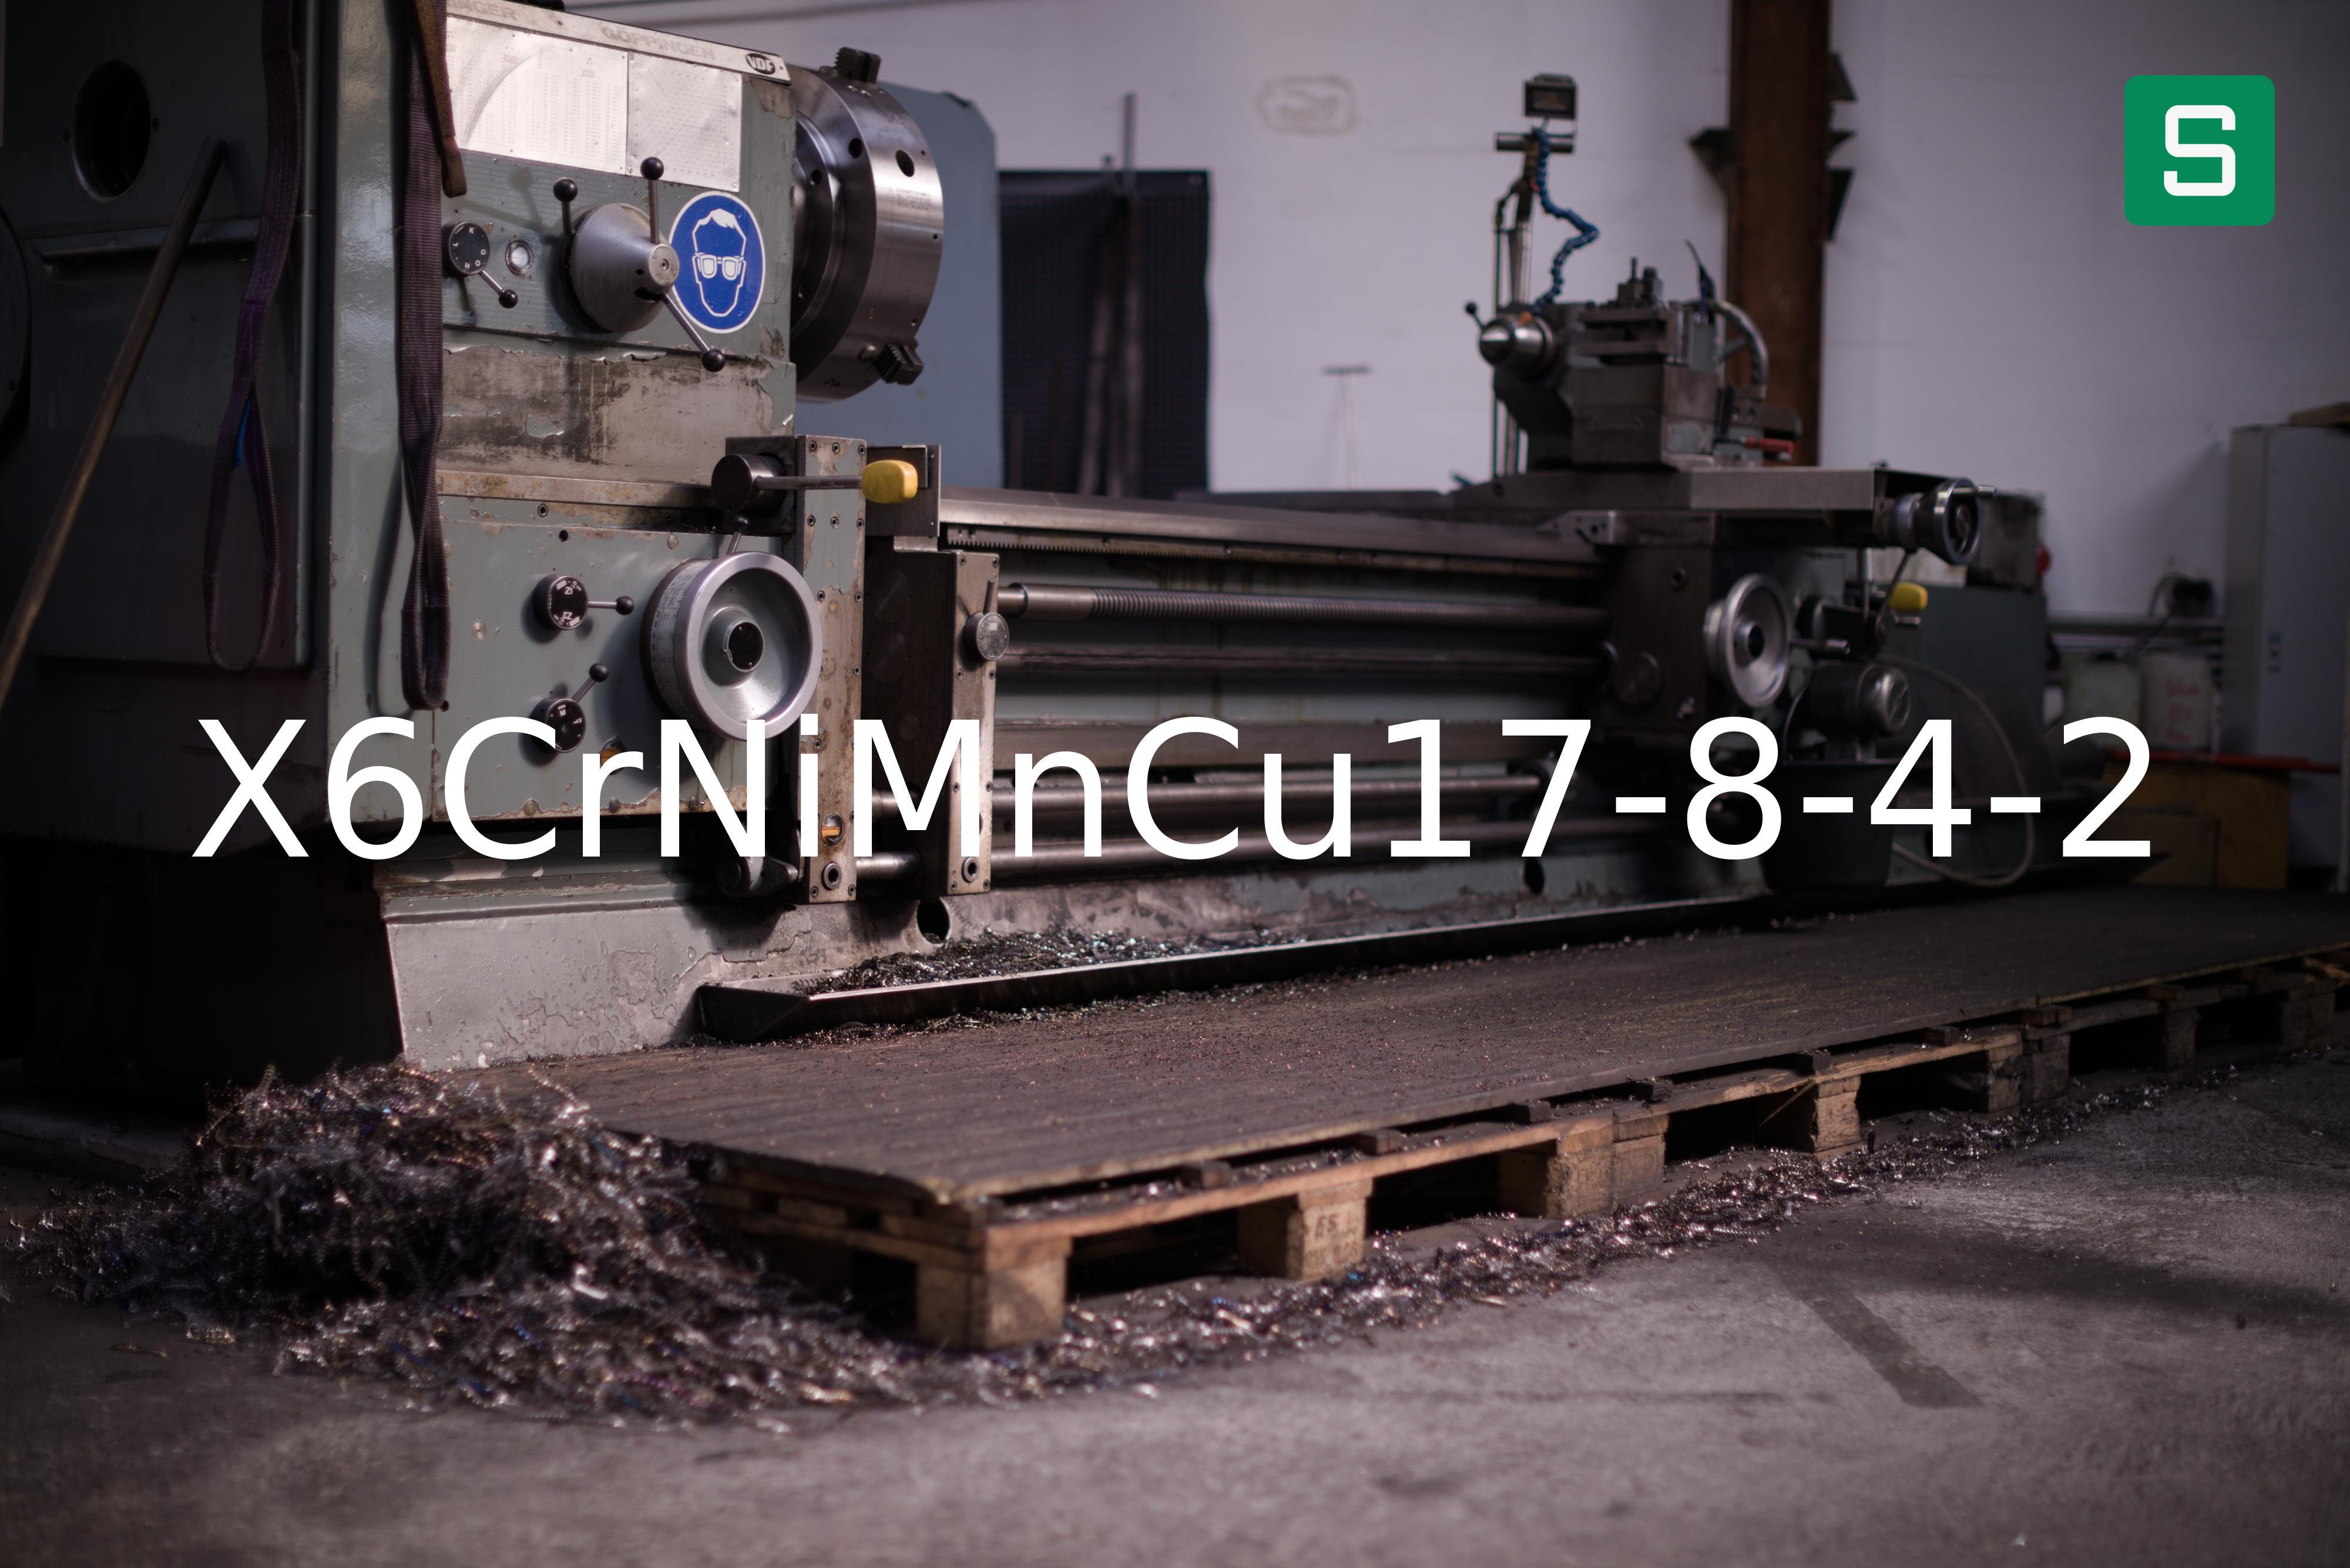 Steel Material: X6CrNiMnCu17-8-4-2